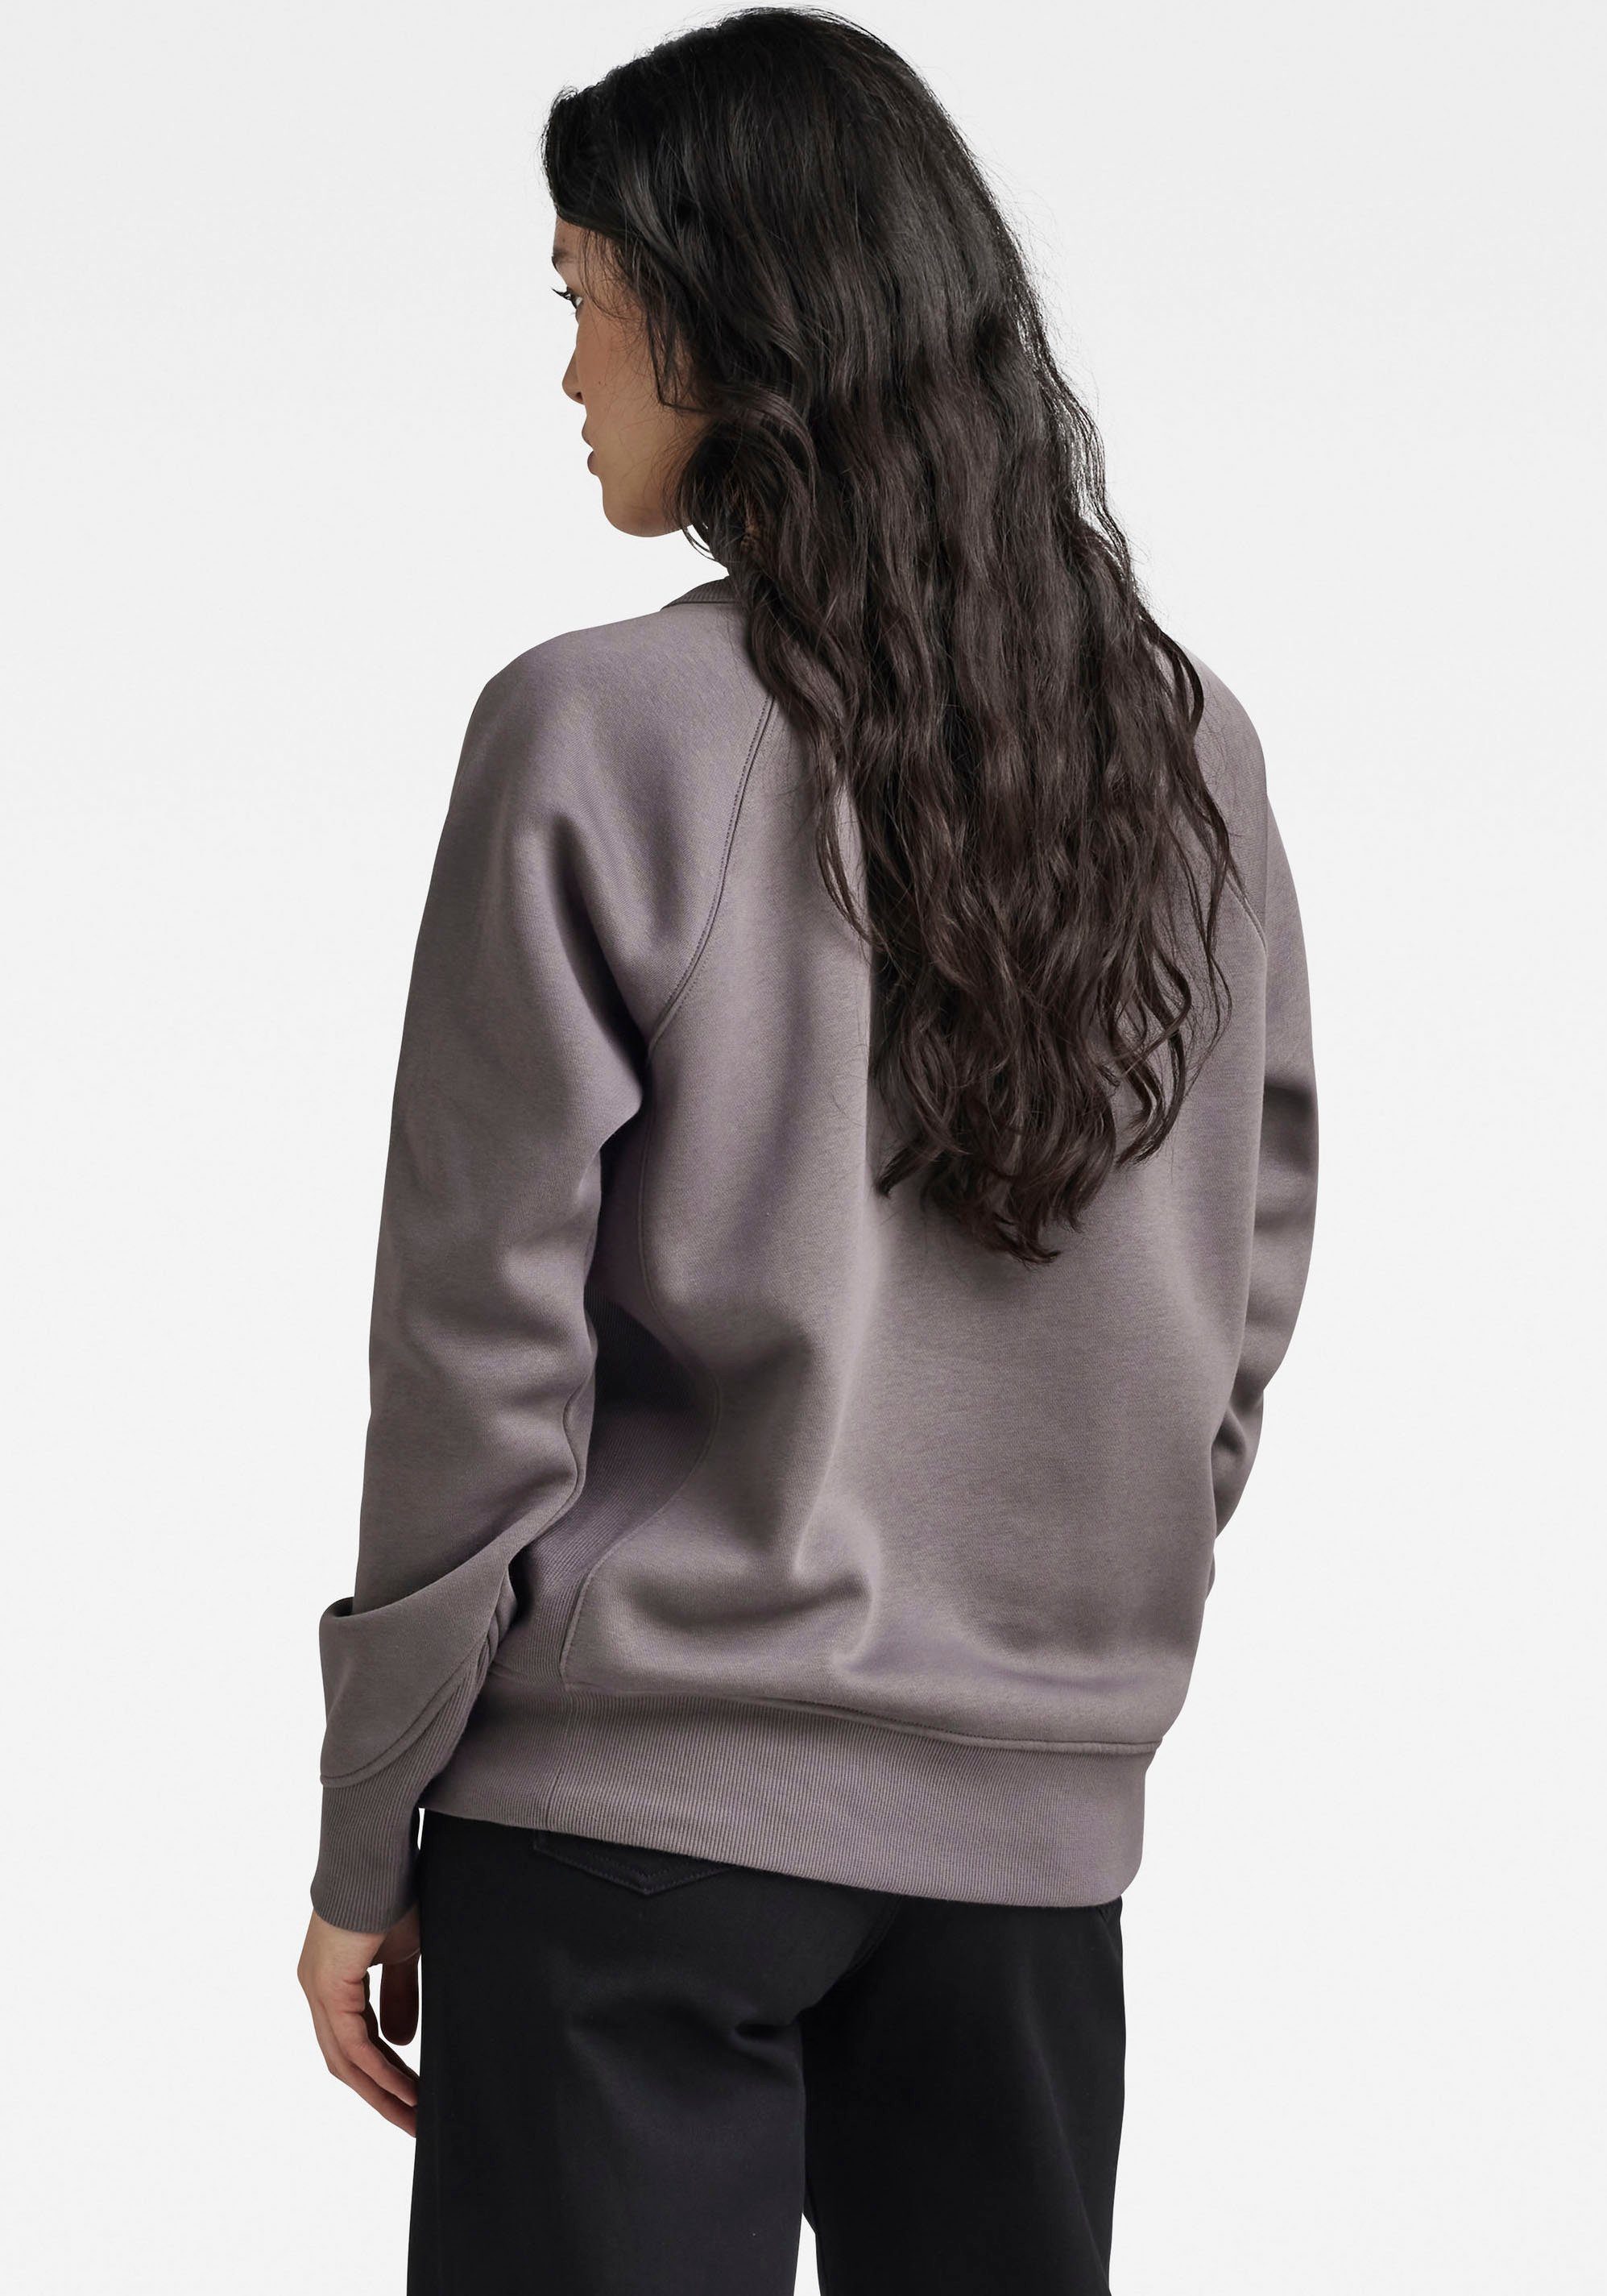 und Saum G-Star Rippdesign in Seiteneinsätze, Sweatshirt 2.0, Bündchen core RAW Premium